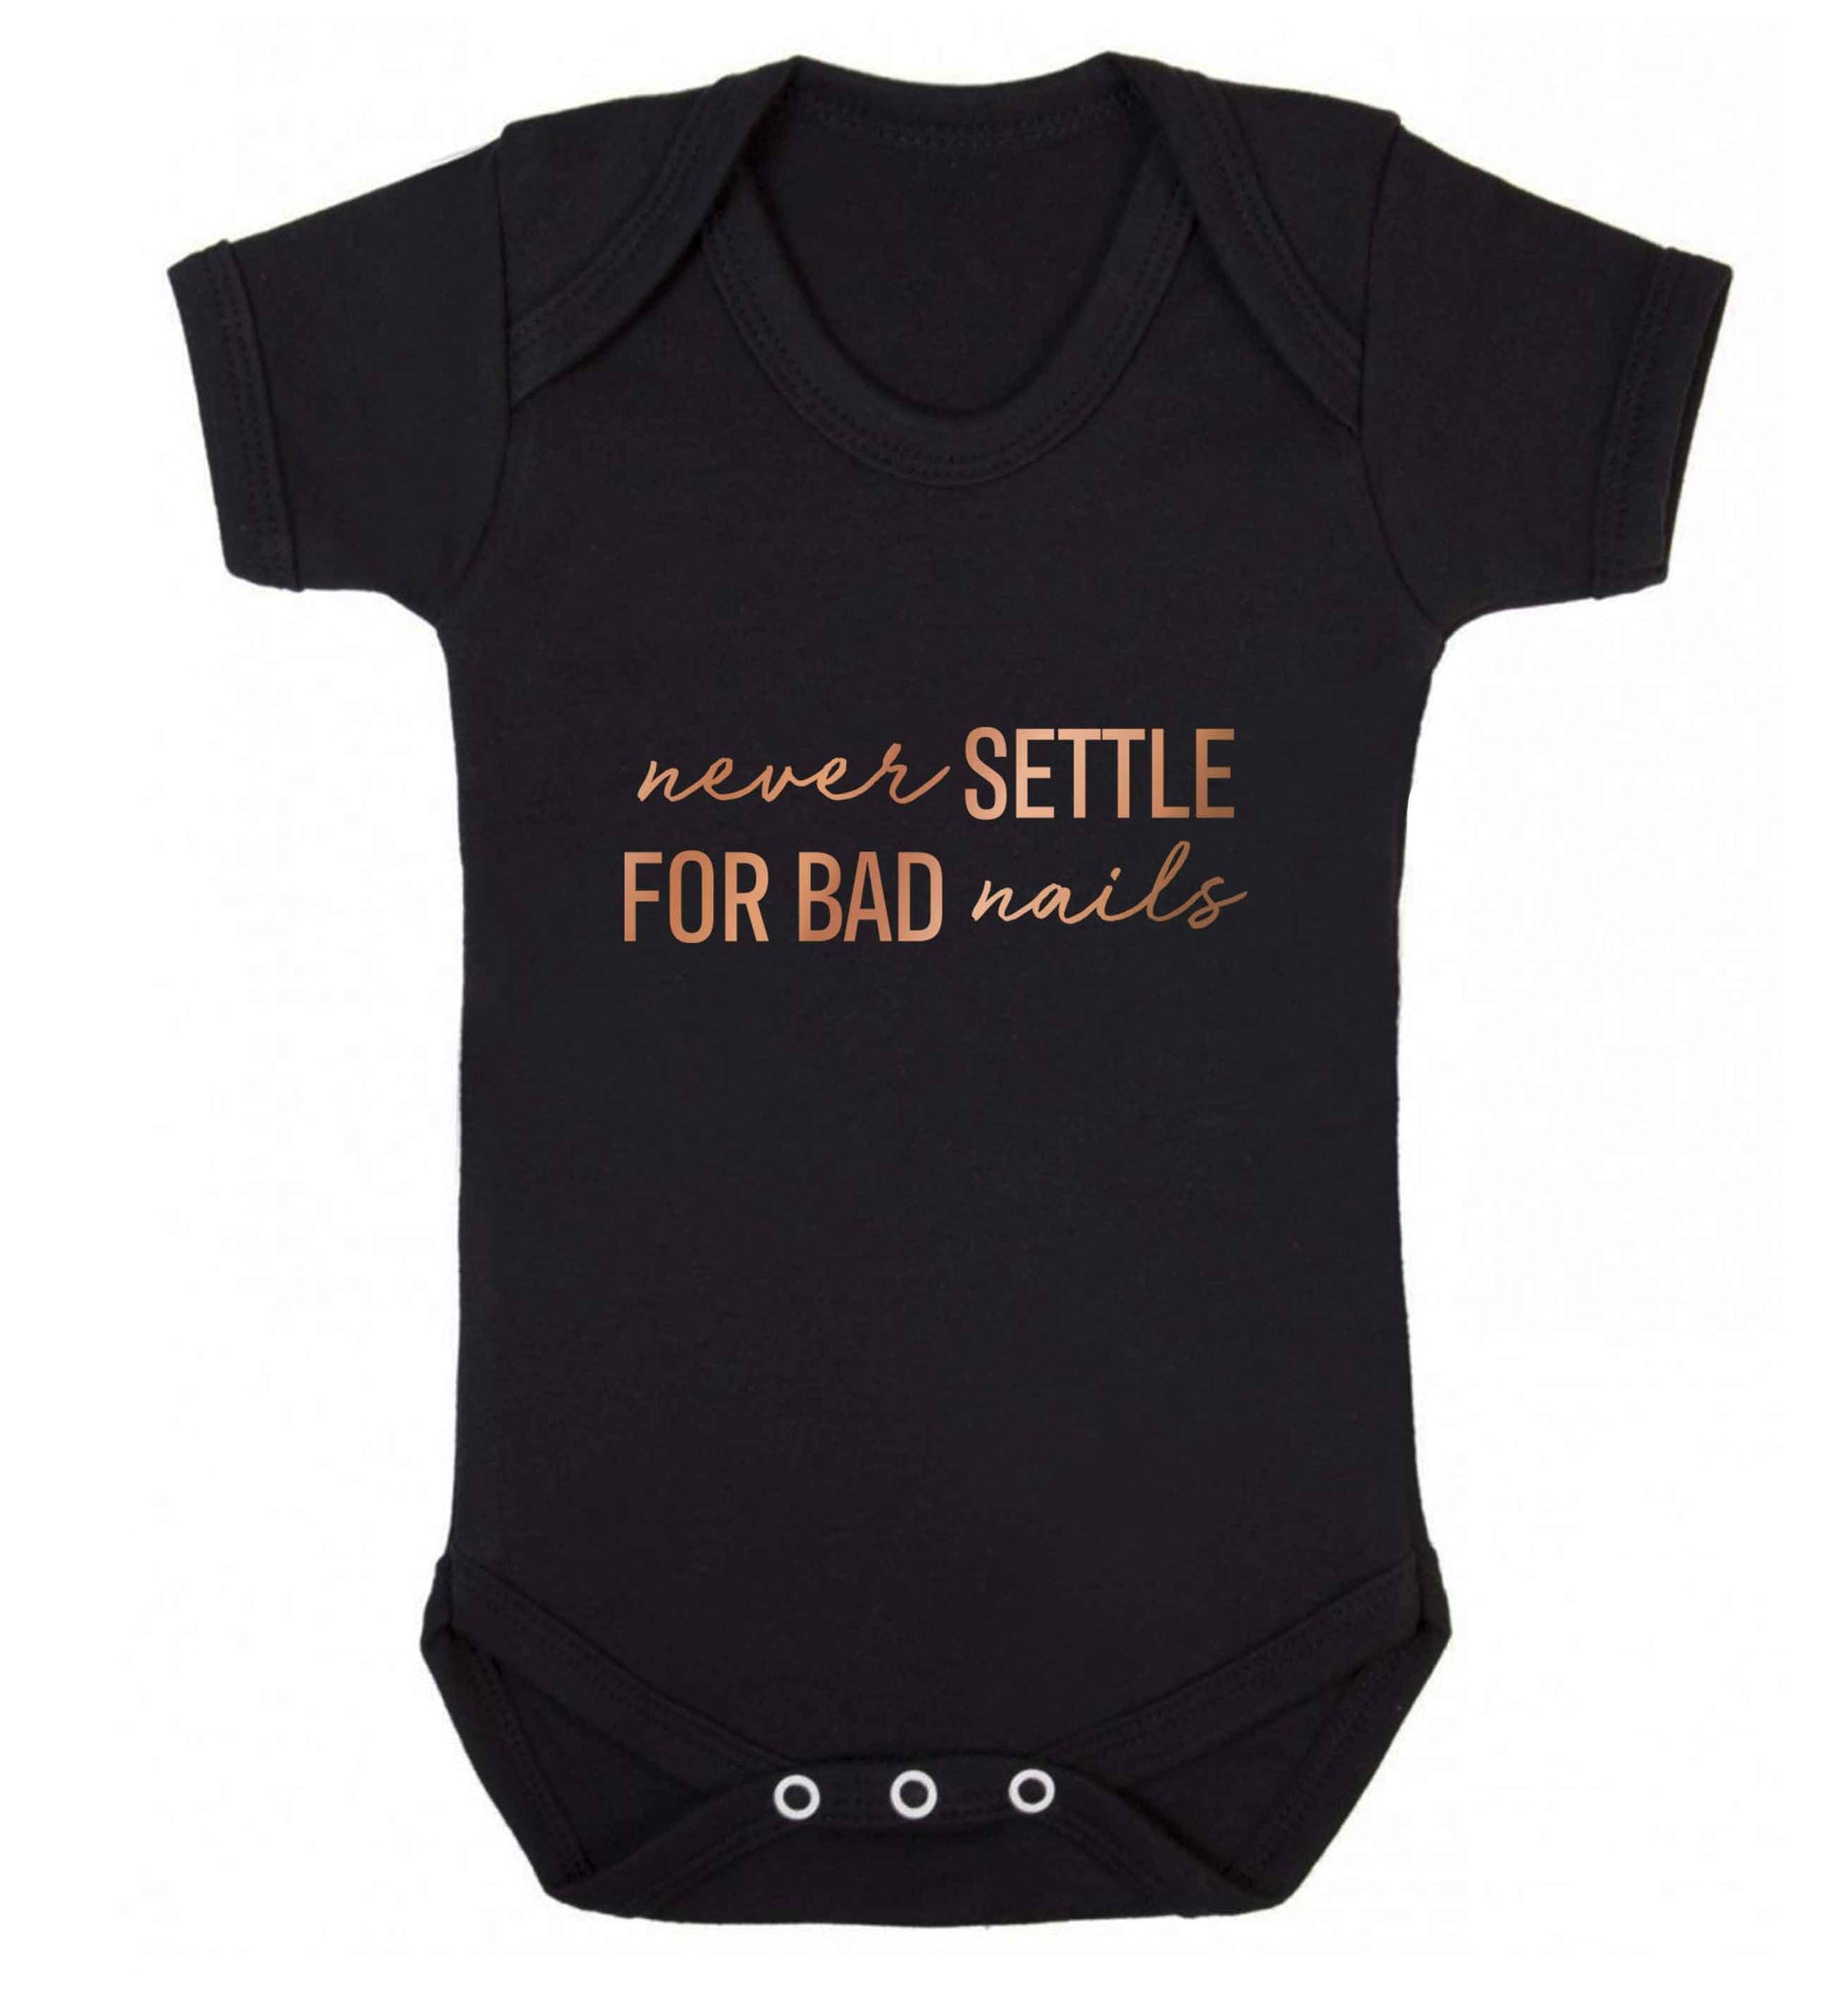 Never settle for bad nails - rose gold baby vest black 18-24 months